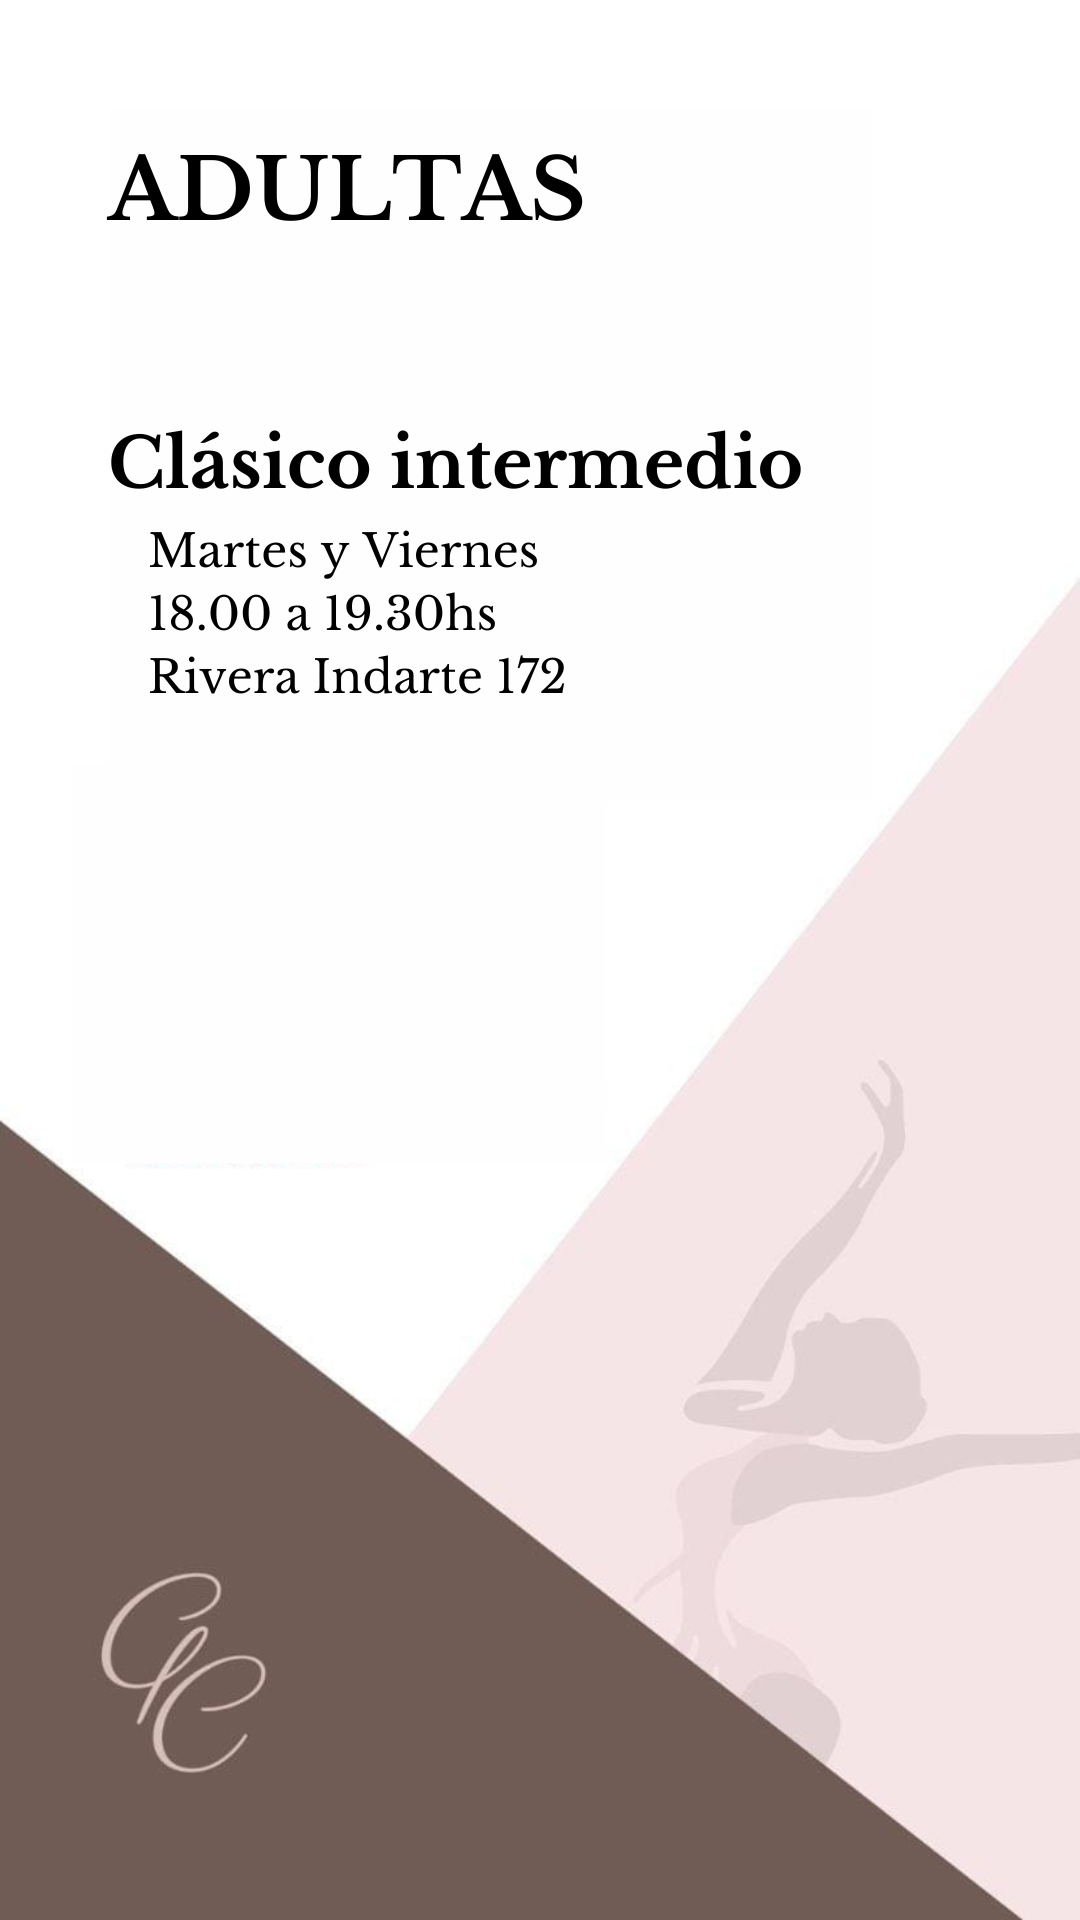 002 ADULTAS PRINCIPIANTES INTER CLÁSICO